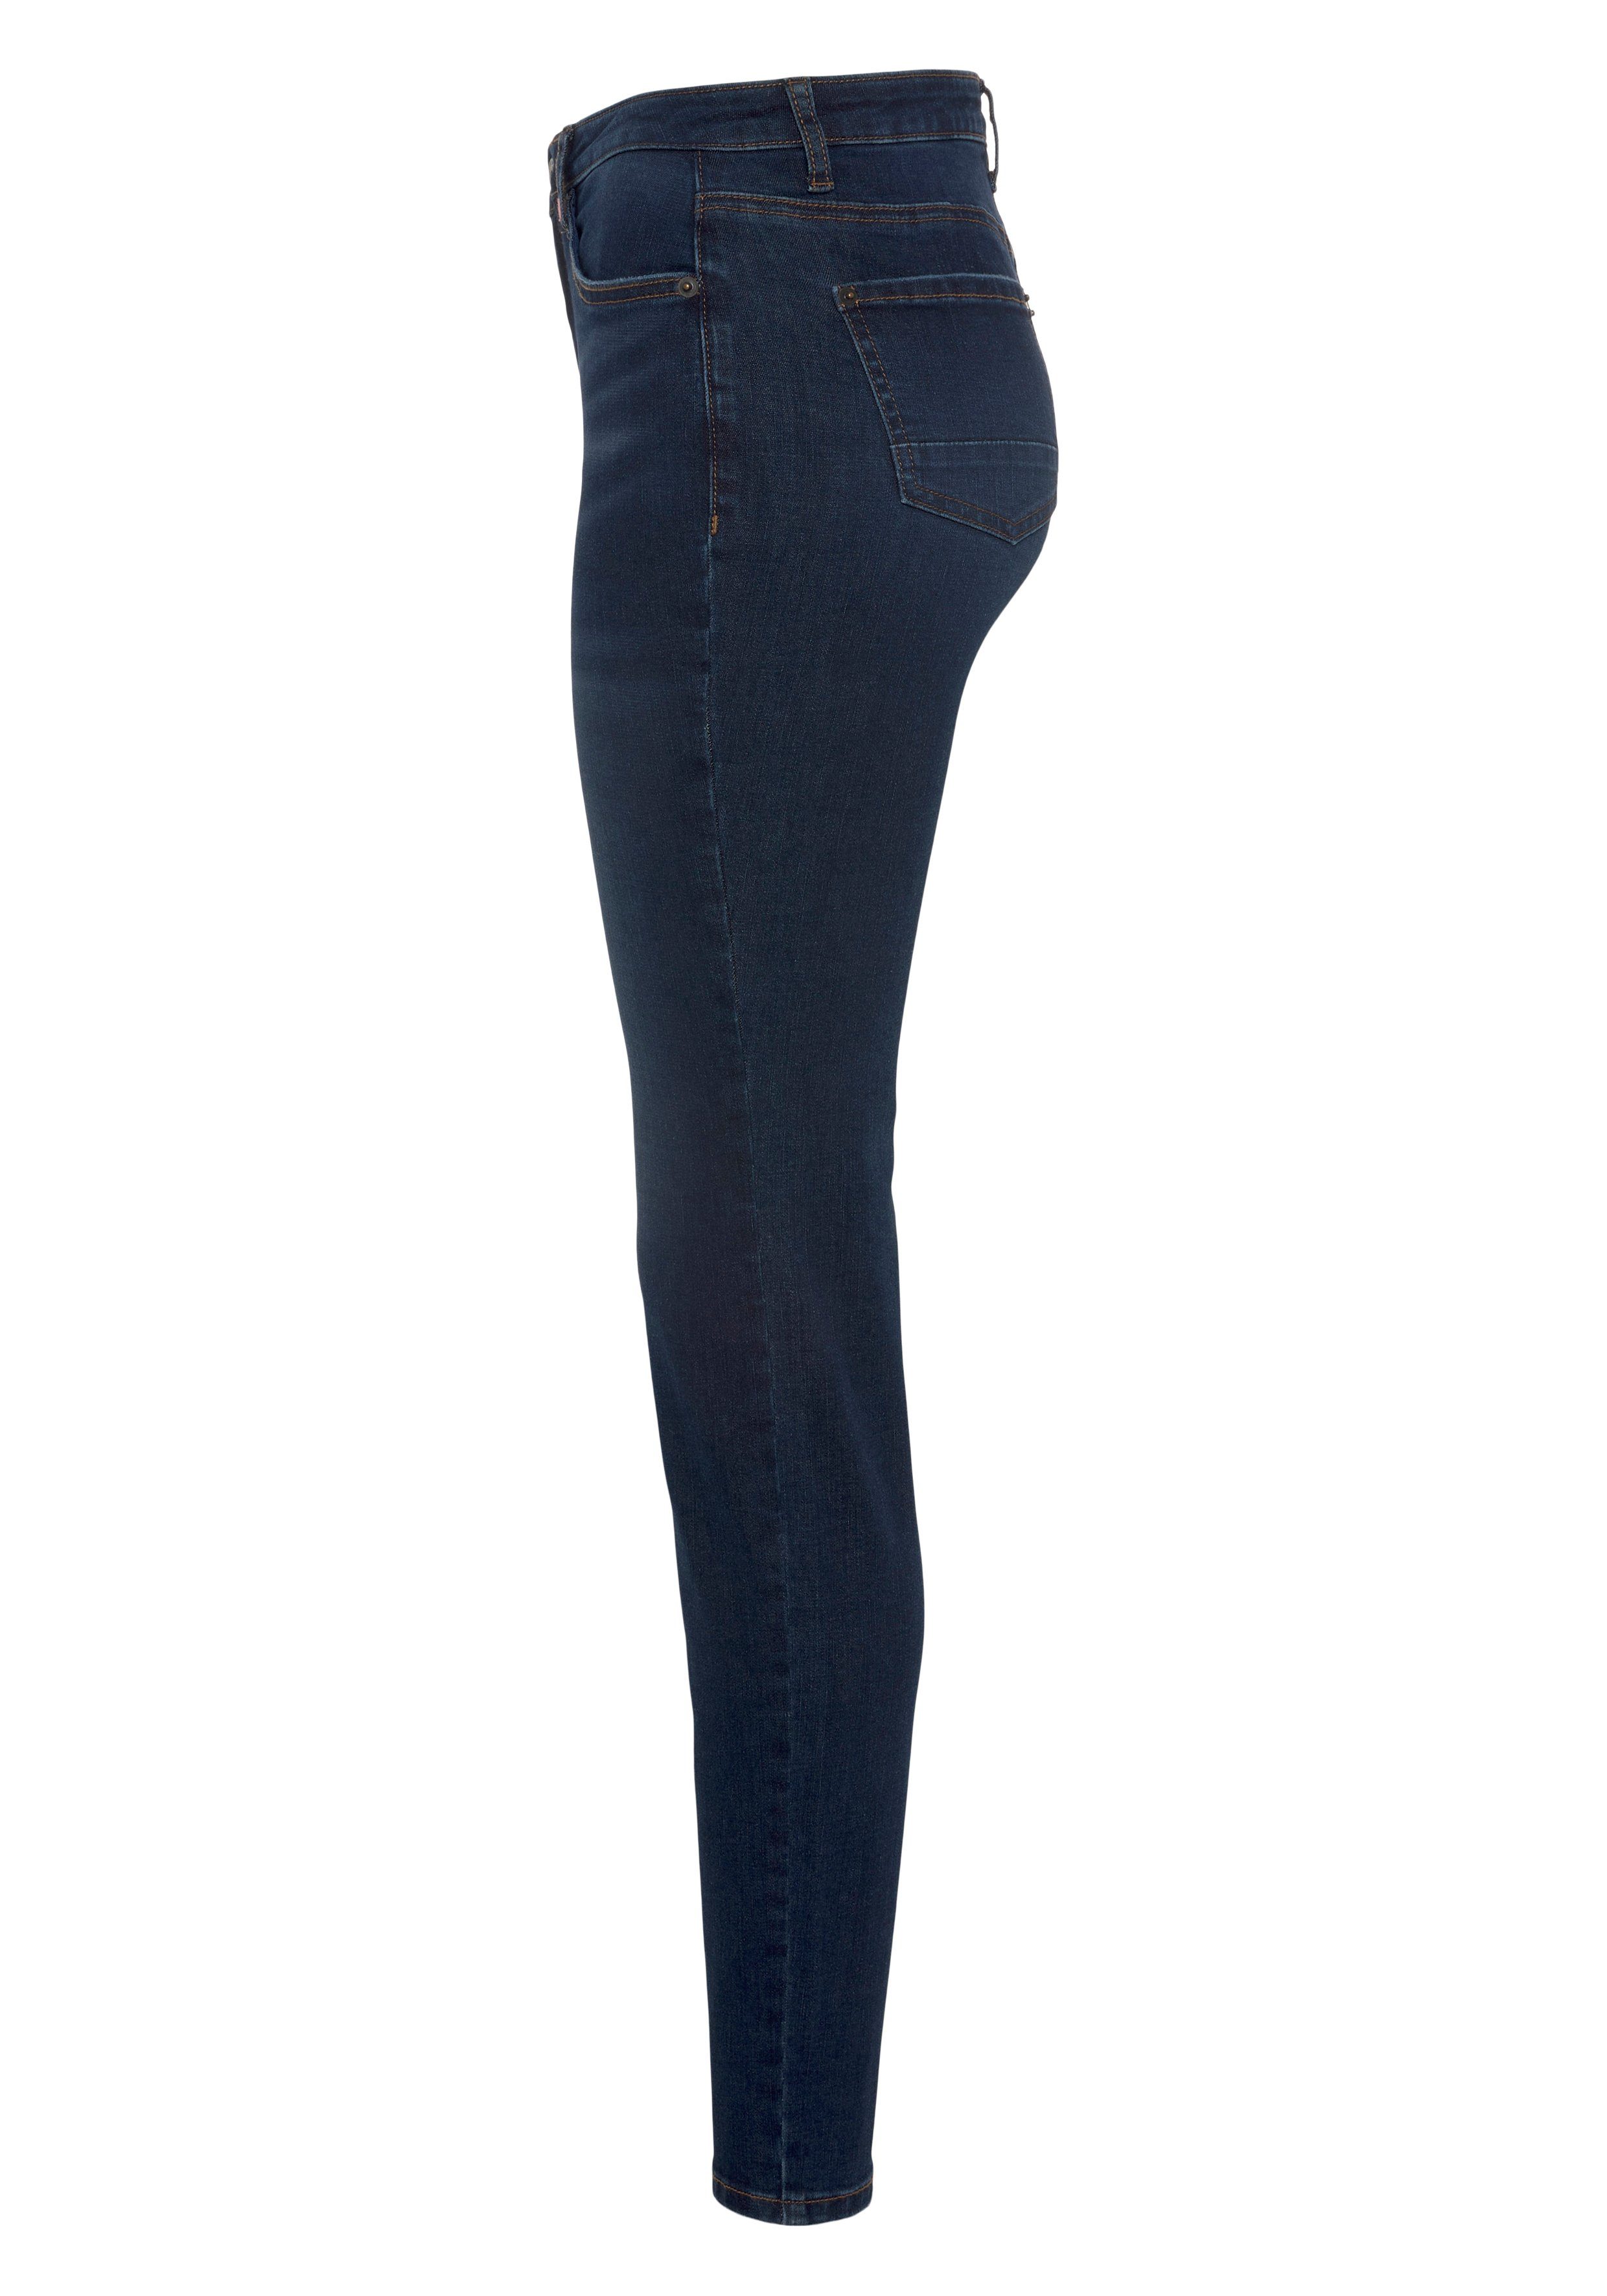 used High-waist-Jeans Alife NolaAK used KOLLEKTION Kickin blue NEUE dark & Slim-Fit